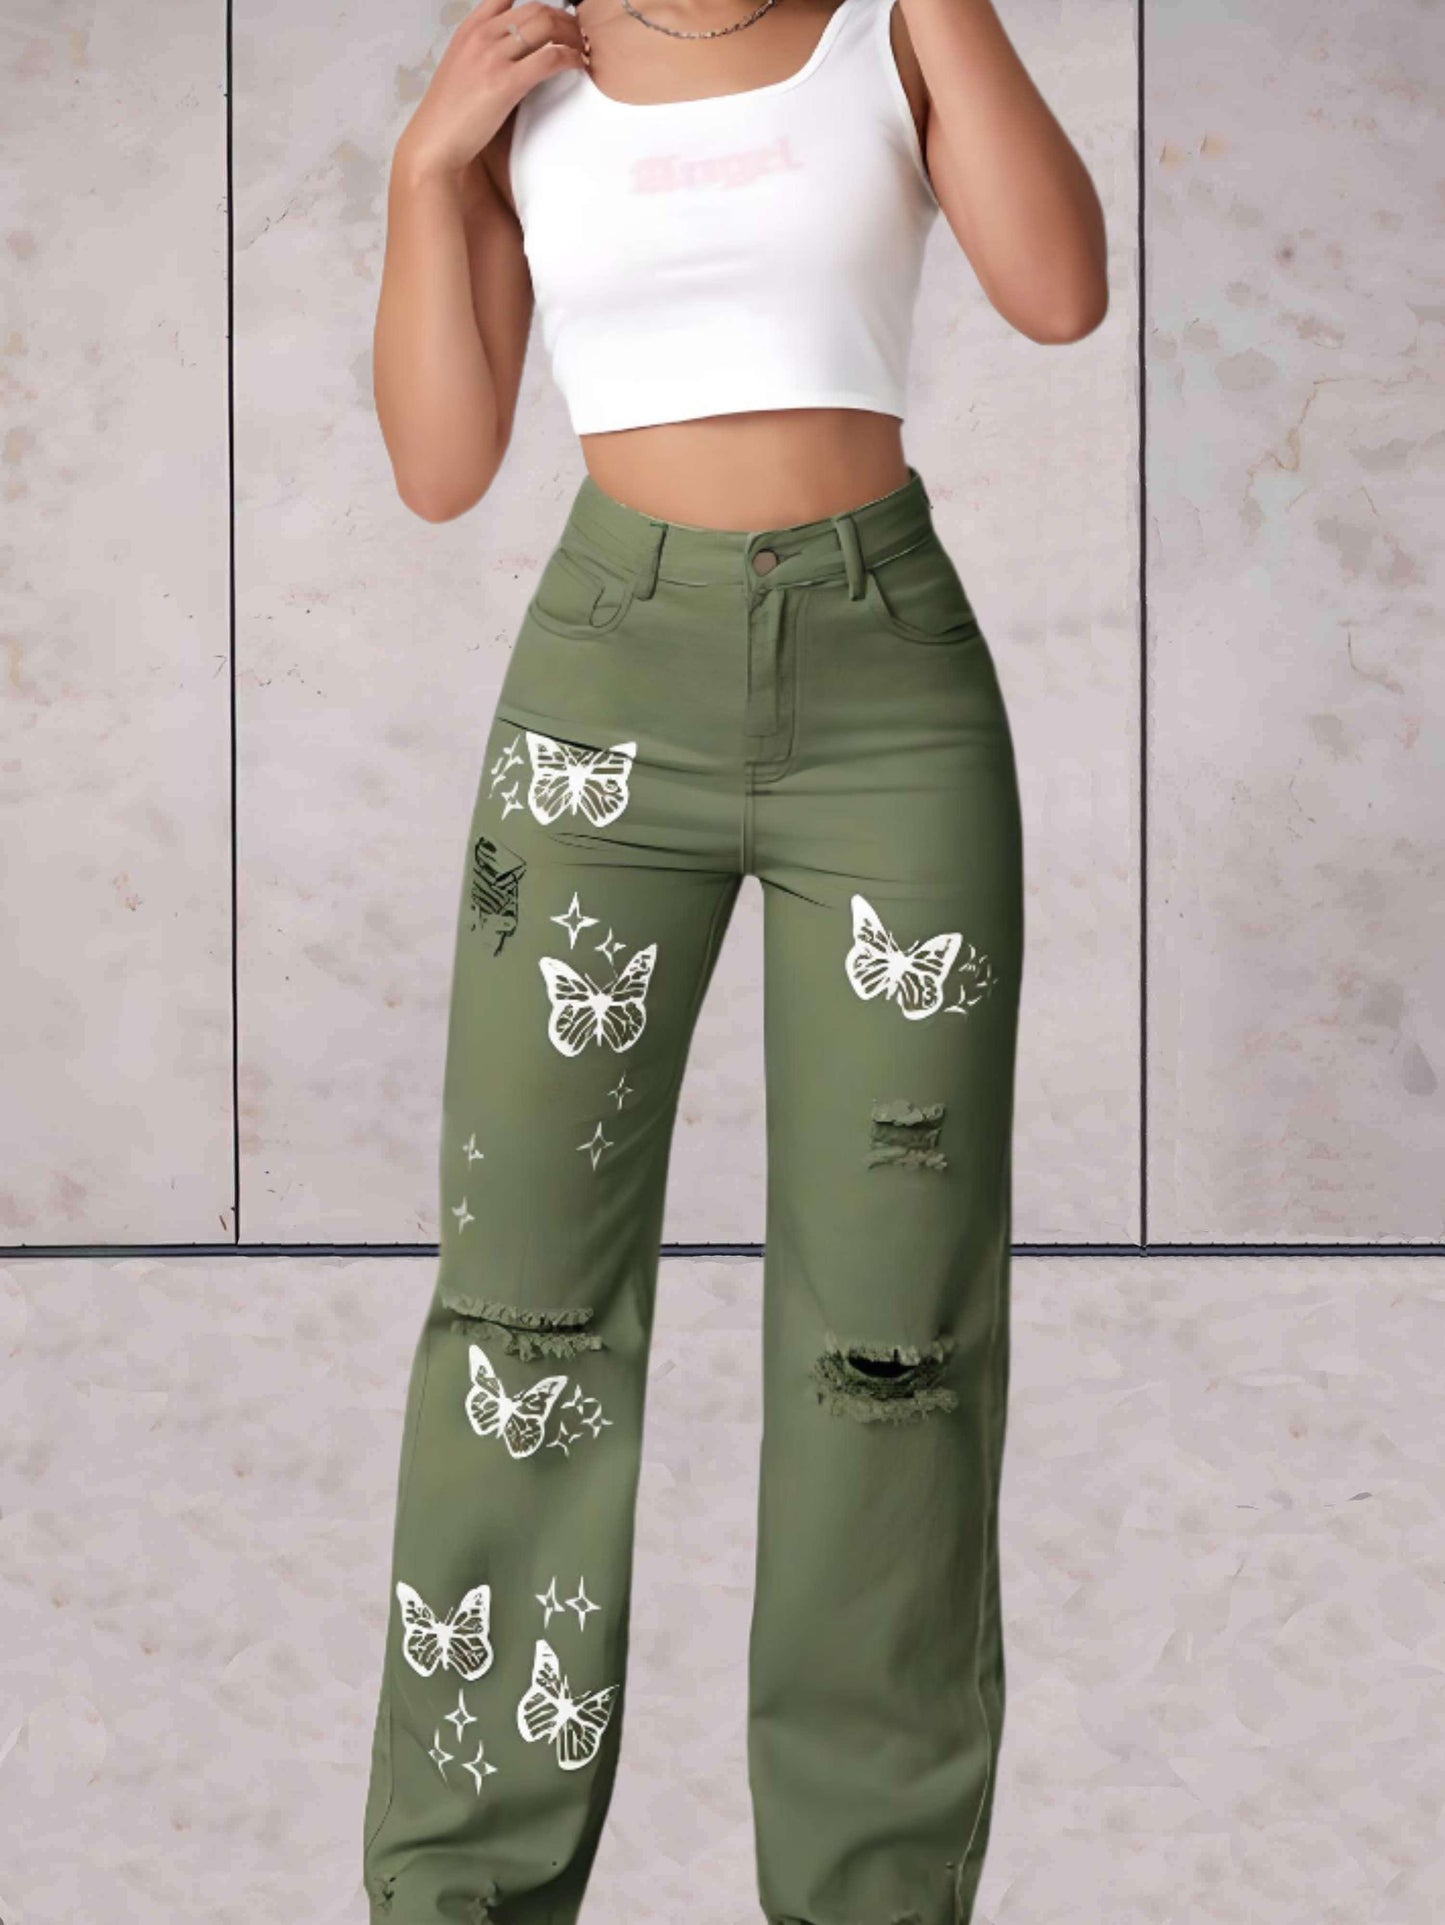 Ciara - Gescheurde jeans wijde pijpen met vlinders patroon - Sky-Sense